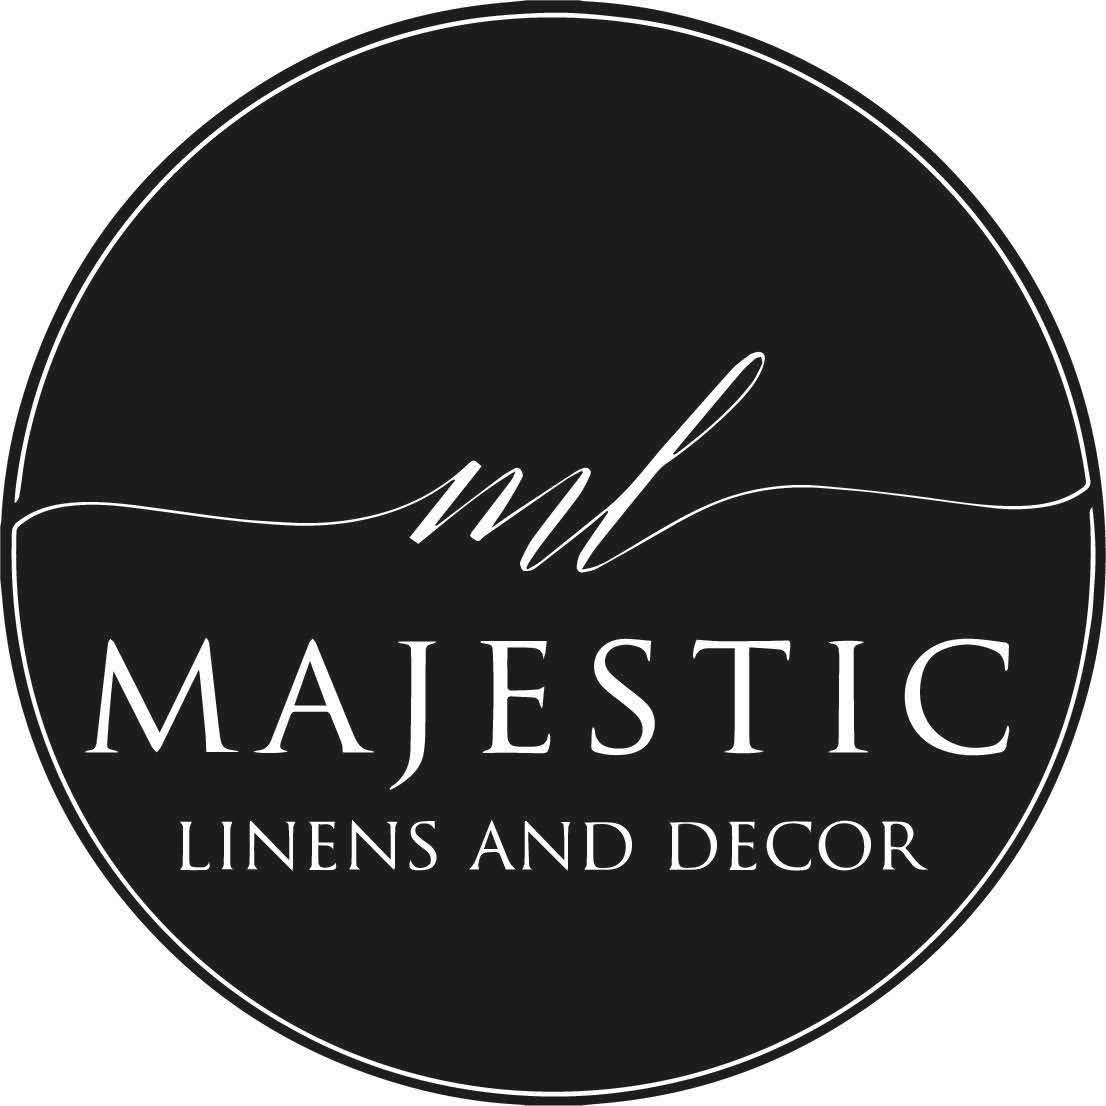 Majestic Linens & Decor/Chris & Kathy Rea